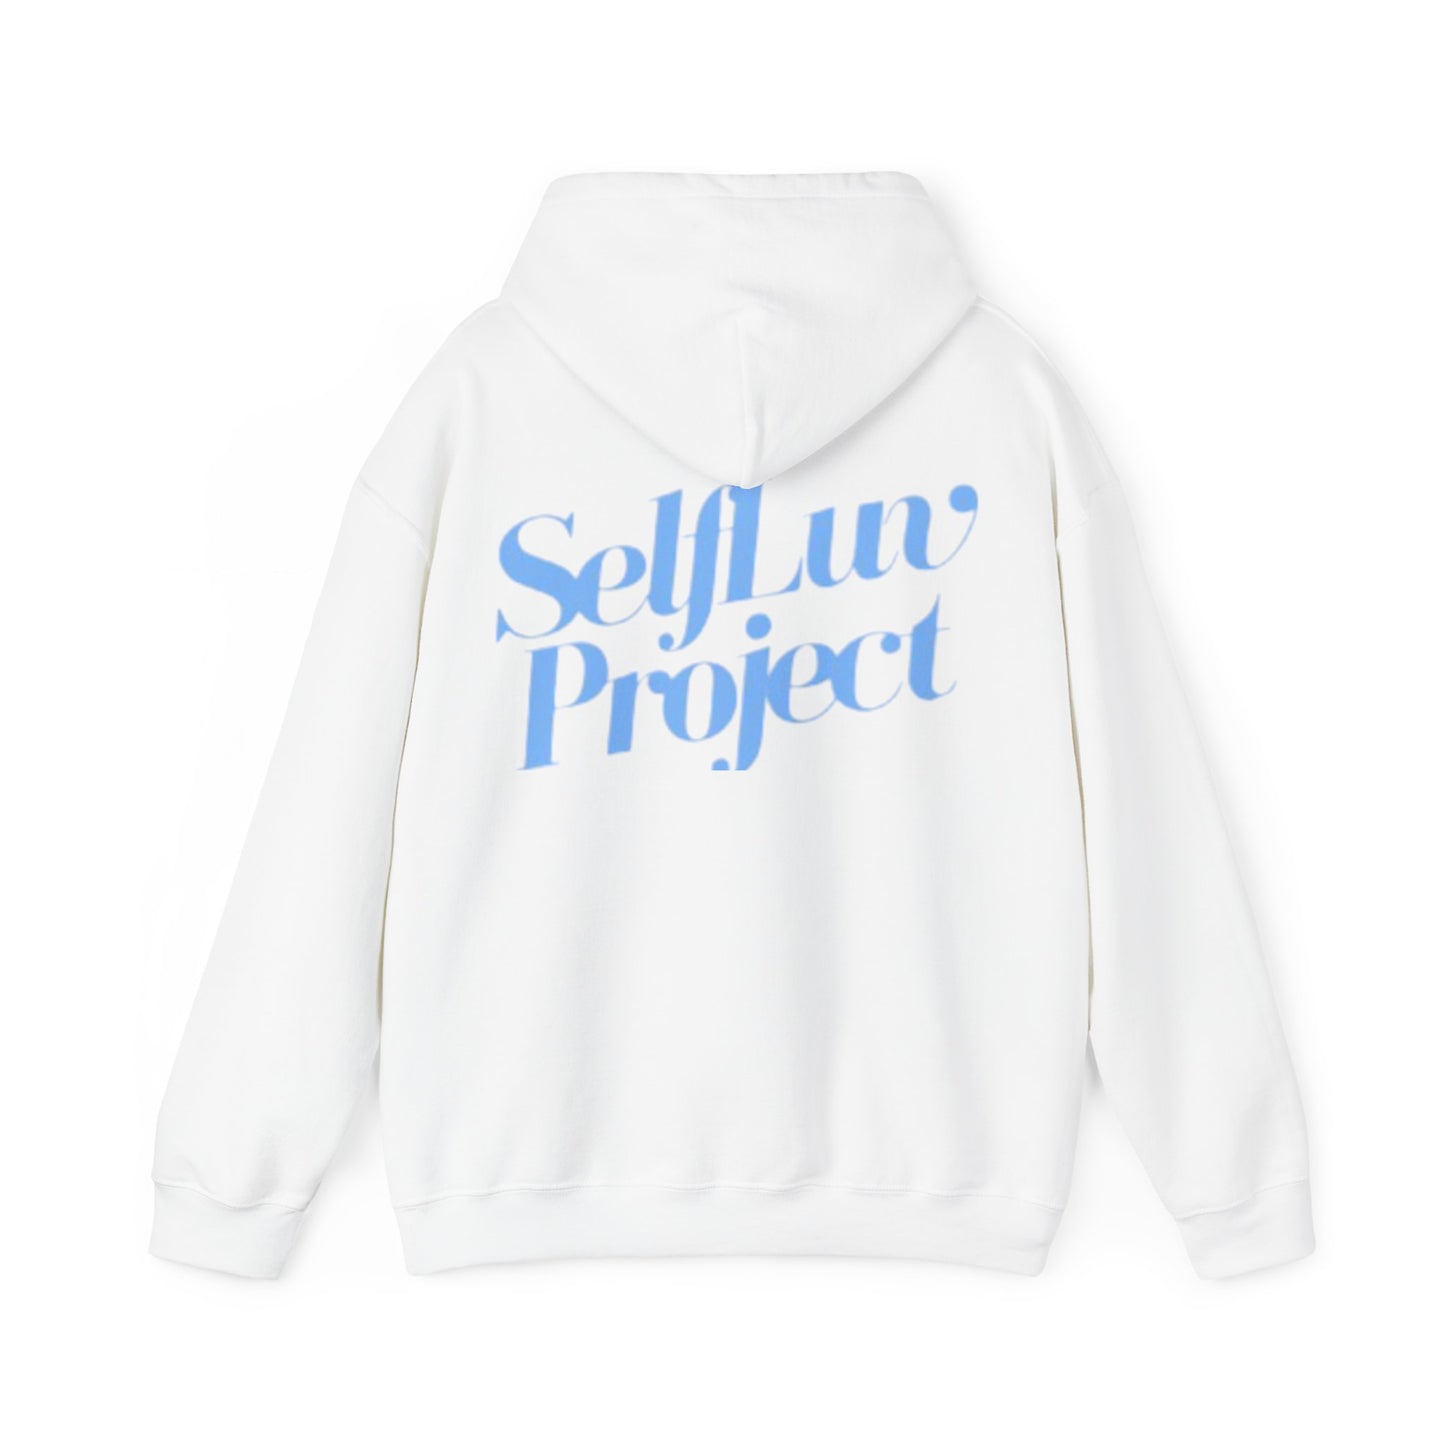 SelfLuv Project Hooded Sweatshirt